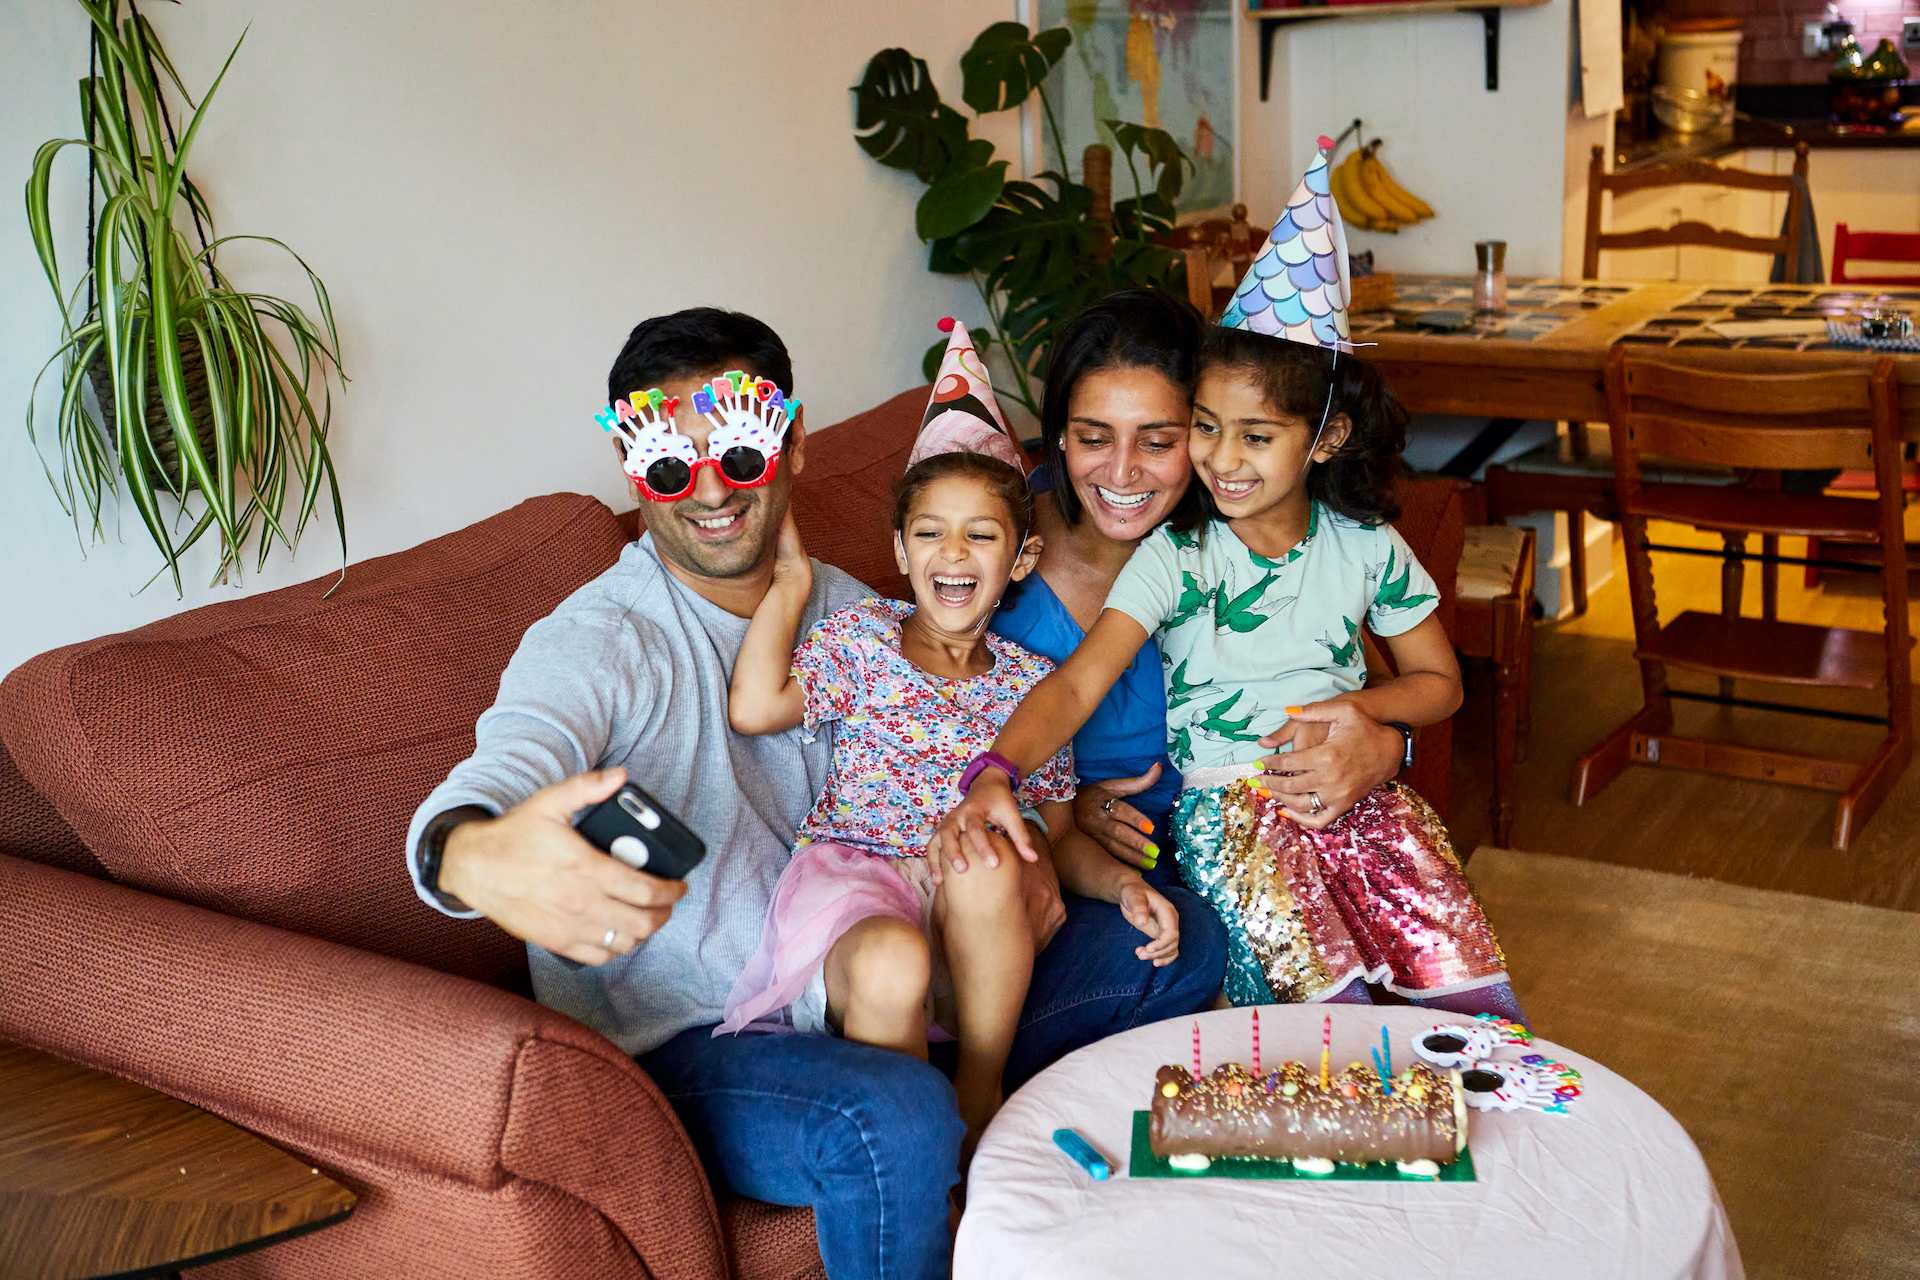 Una foto de una familia riéndose en una fiesta de cumpleaños